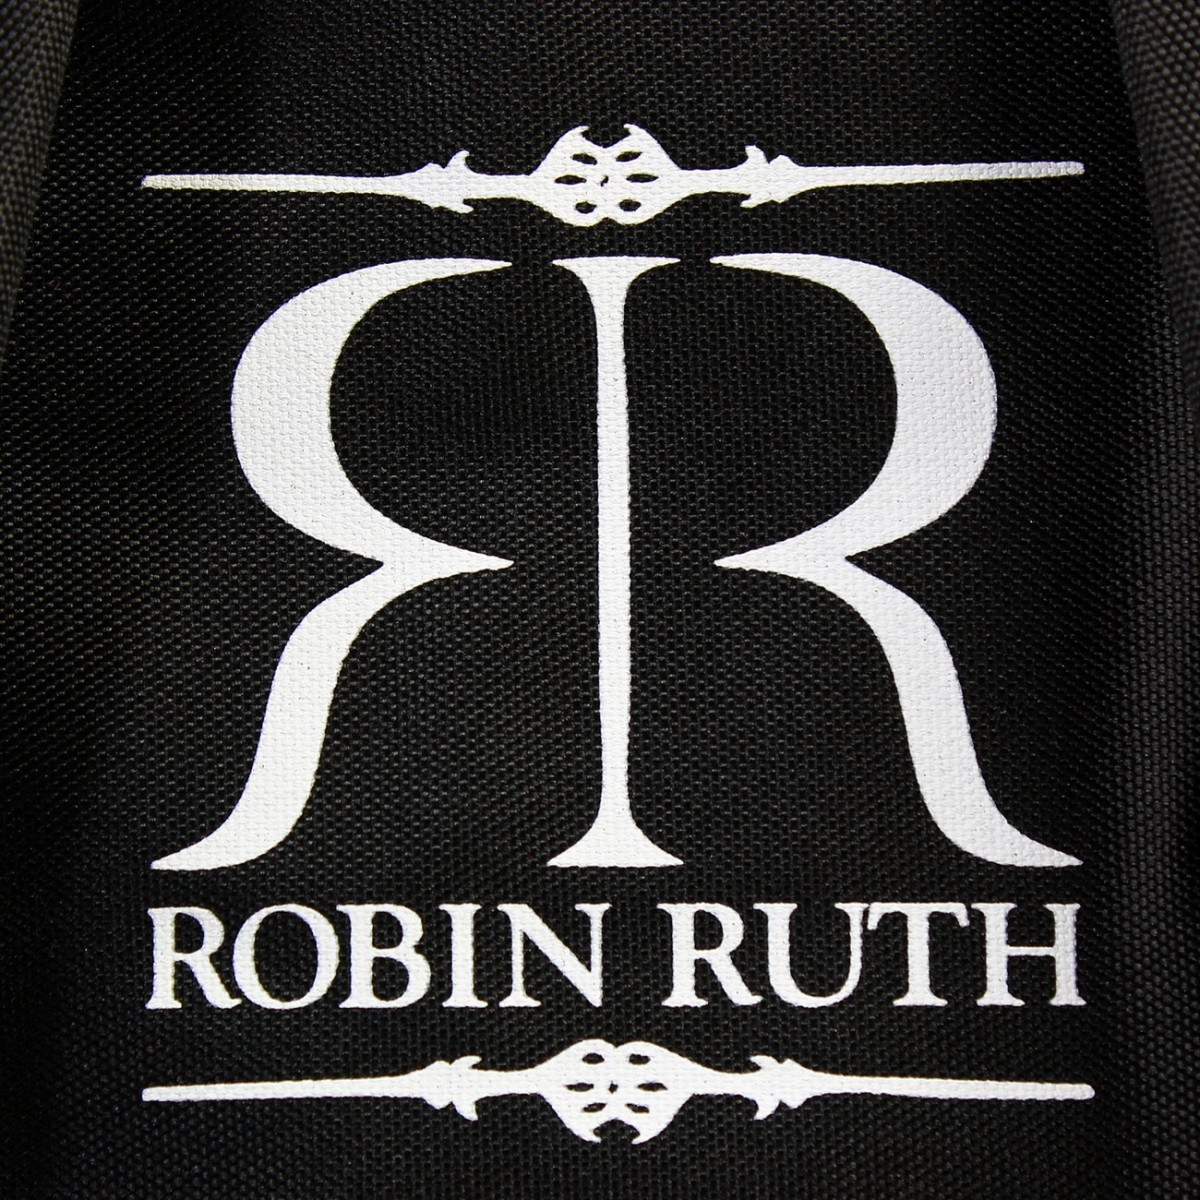 Robin Ruth London City Rucksack schwarz weiß Baumwolle OTG6020S 